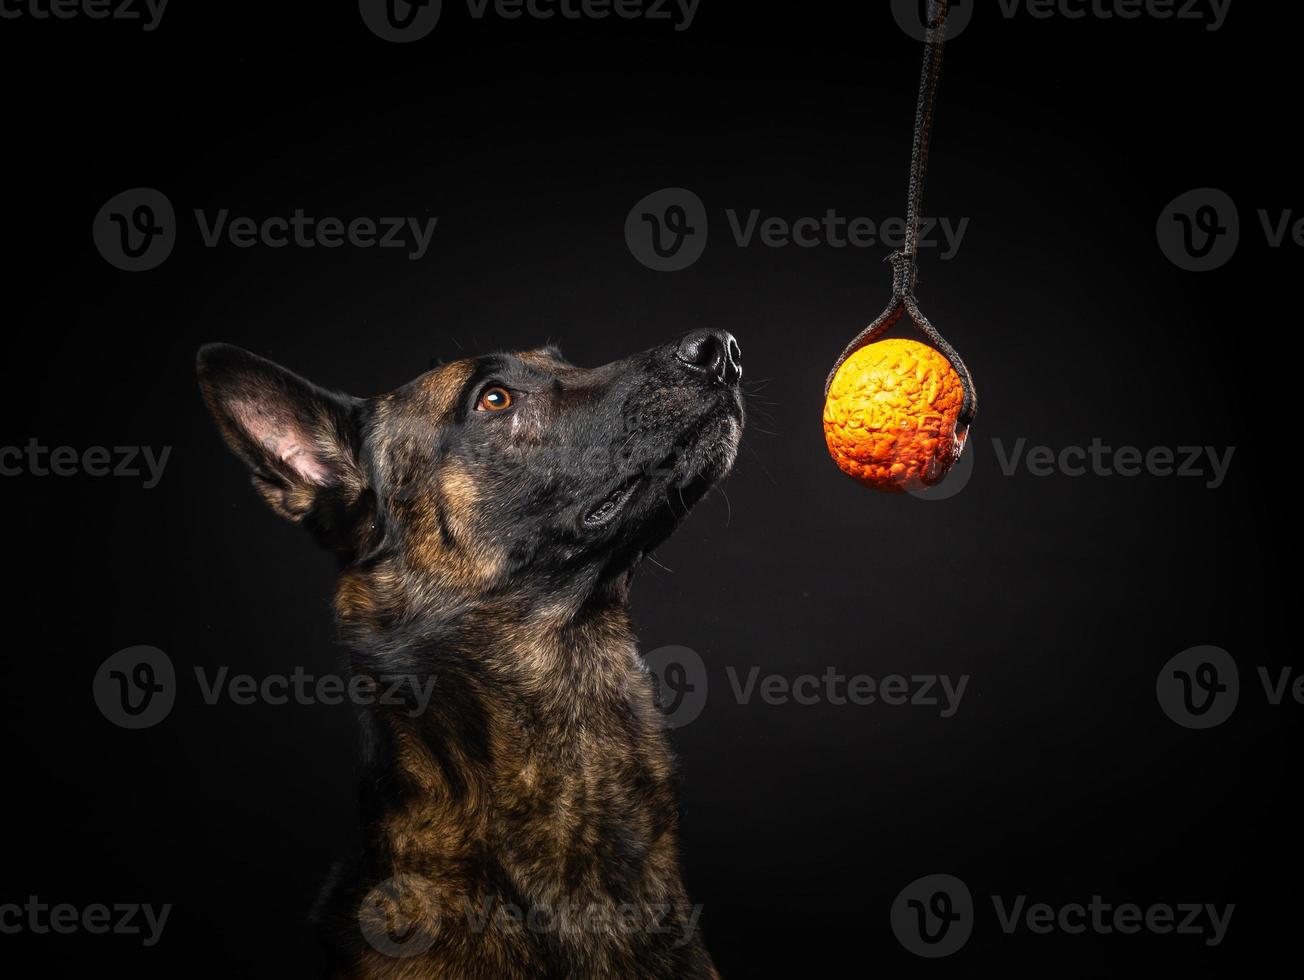 portrait d'un chien de berger belge sur un fond noir isolé. photo